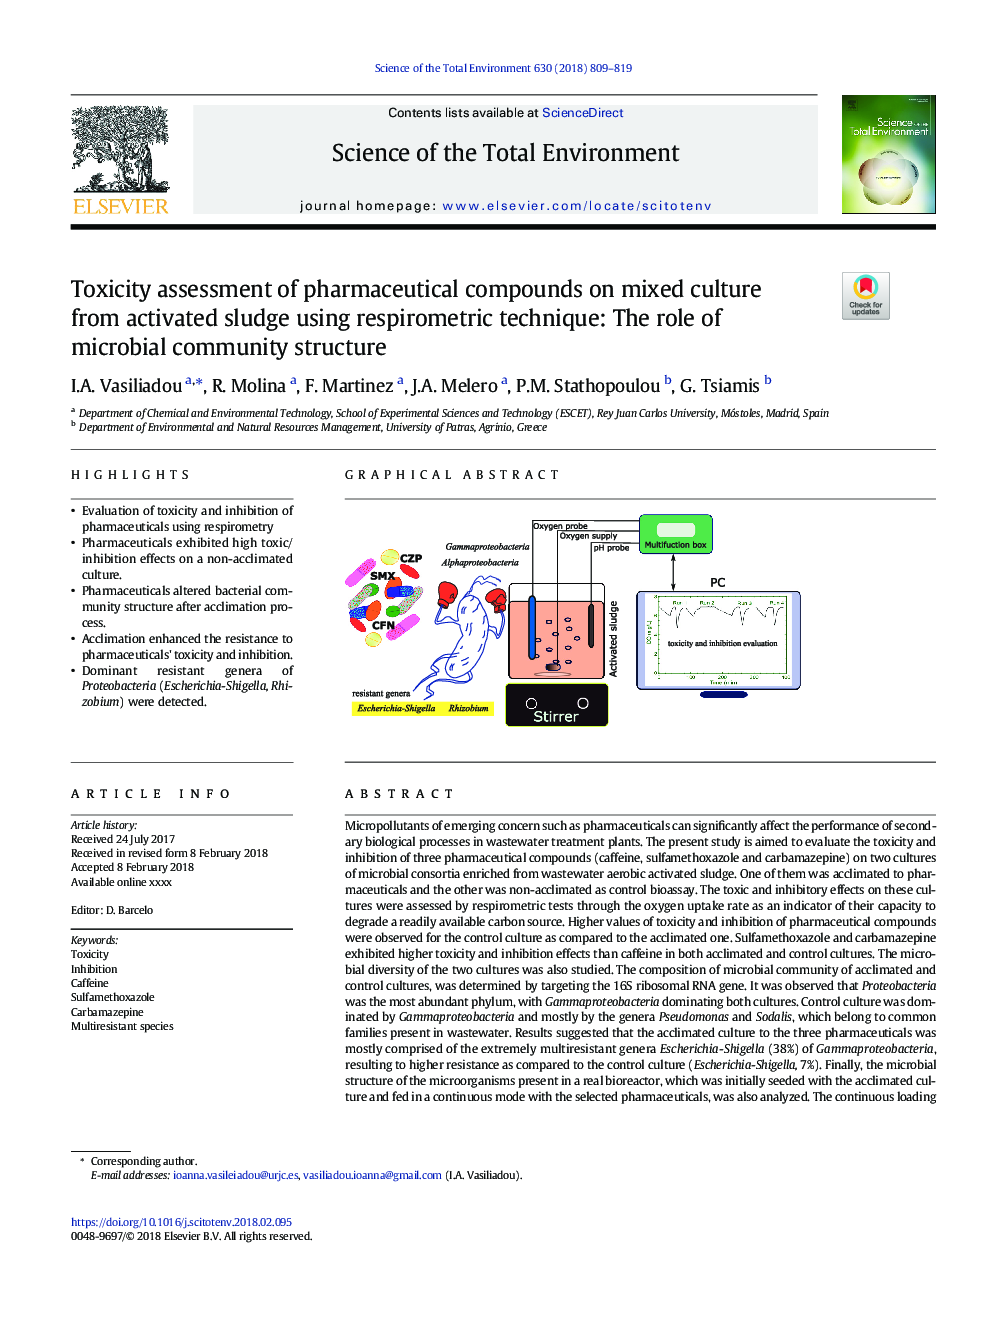 ارزیابی مسمومیت ترکیبات دارویی در کشت مخلوط از لجن فعال با استفاده از روش تنفسی: نقش ساختار جامعه میکروبی 